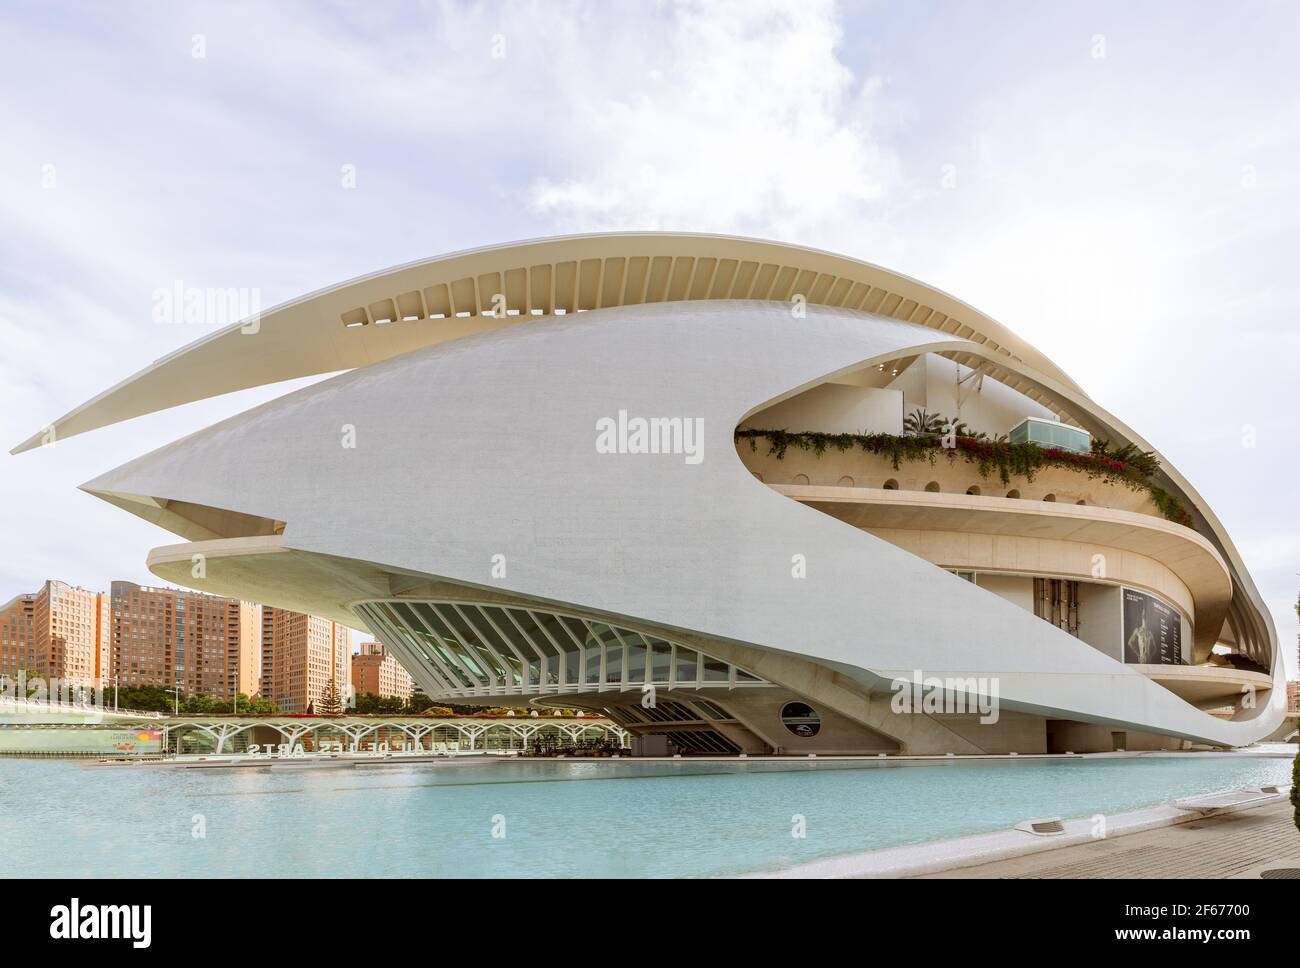 Valencia - Spanien. 24. Juni 2019: Schöne Aussicht auf das Opernhaus (Palau de les Arts Reina Sofia) von Santiago Calatrava Stockfoto